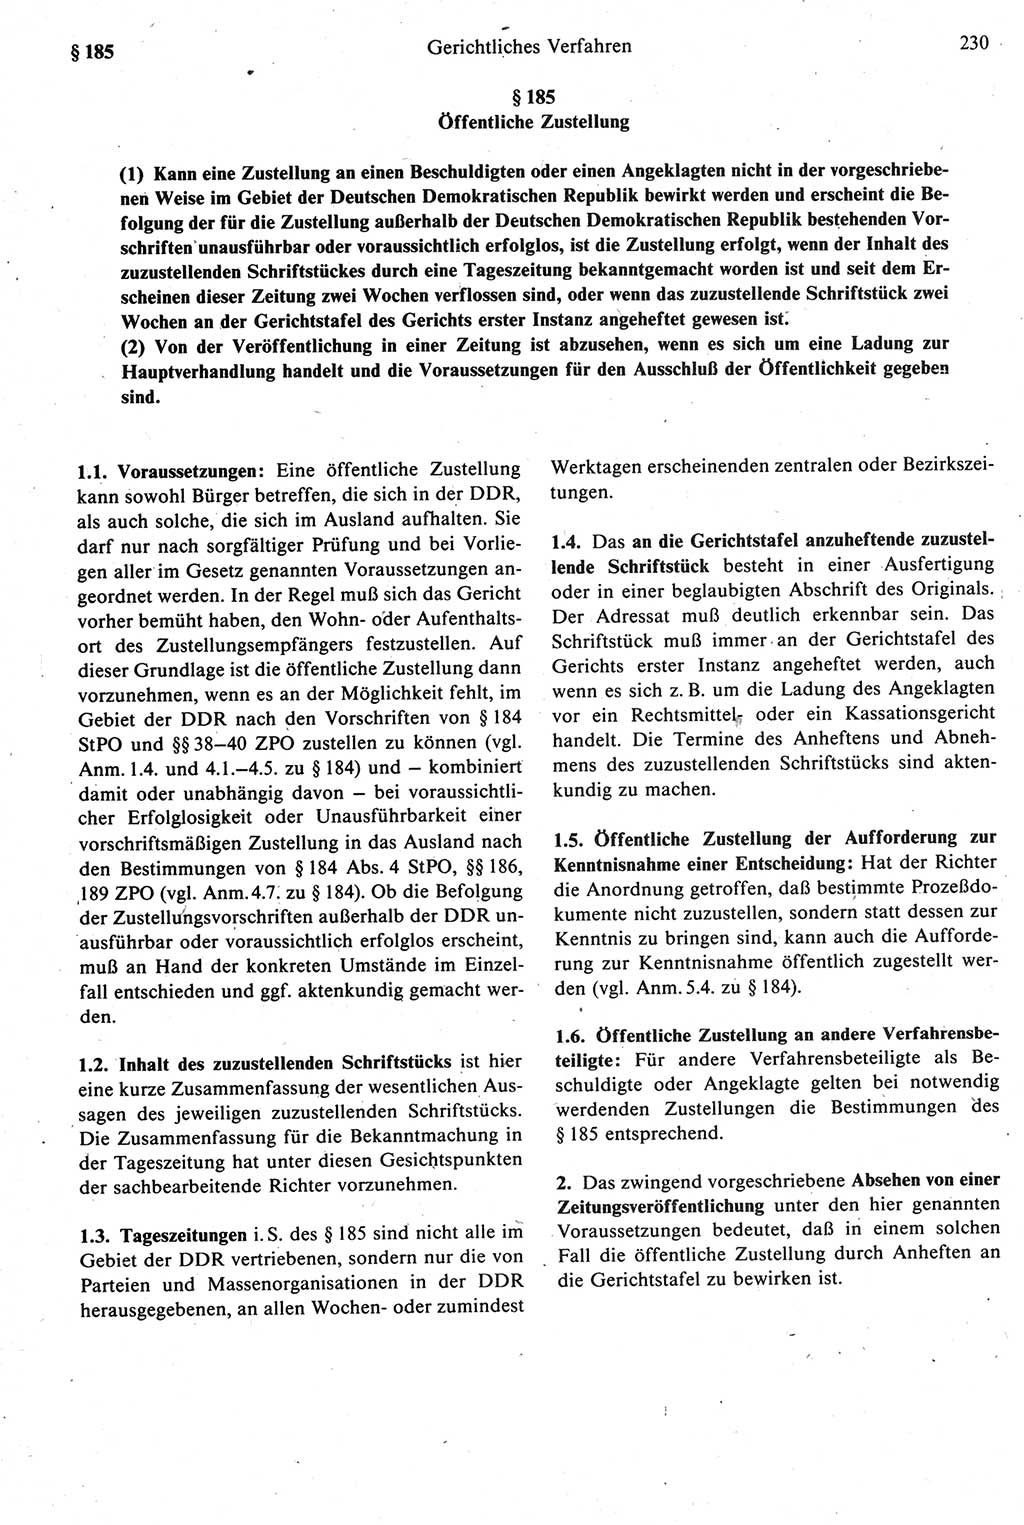 Strafprozeßrecht der DDR [Deutsche Demokratische Republik], Kommentar zur Strafprozeßordnung (StPO) 1987, Seite 230 (Strafprozeßr. DDR Komm. StPO 1987, S. 230)